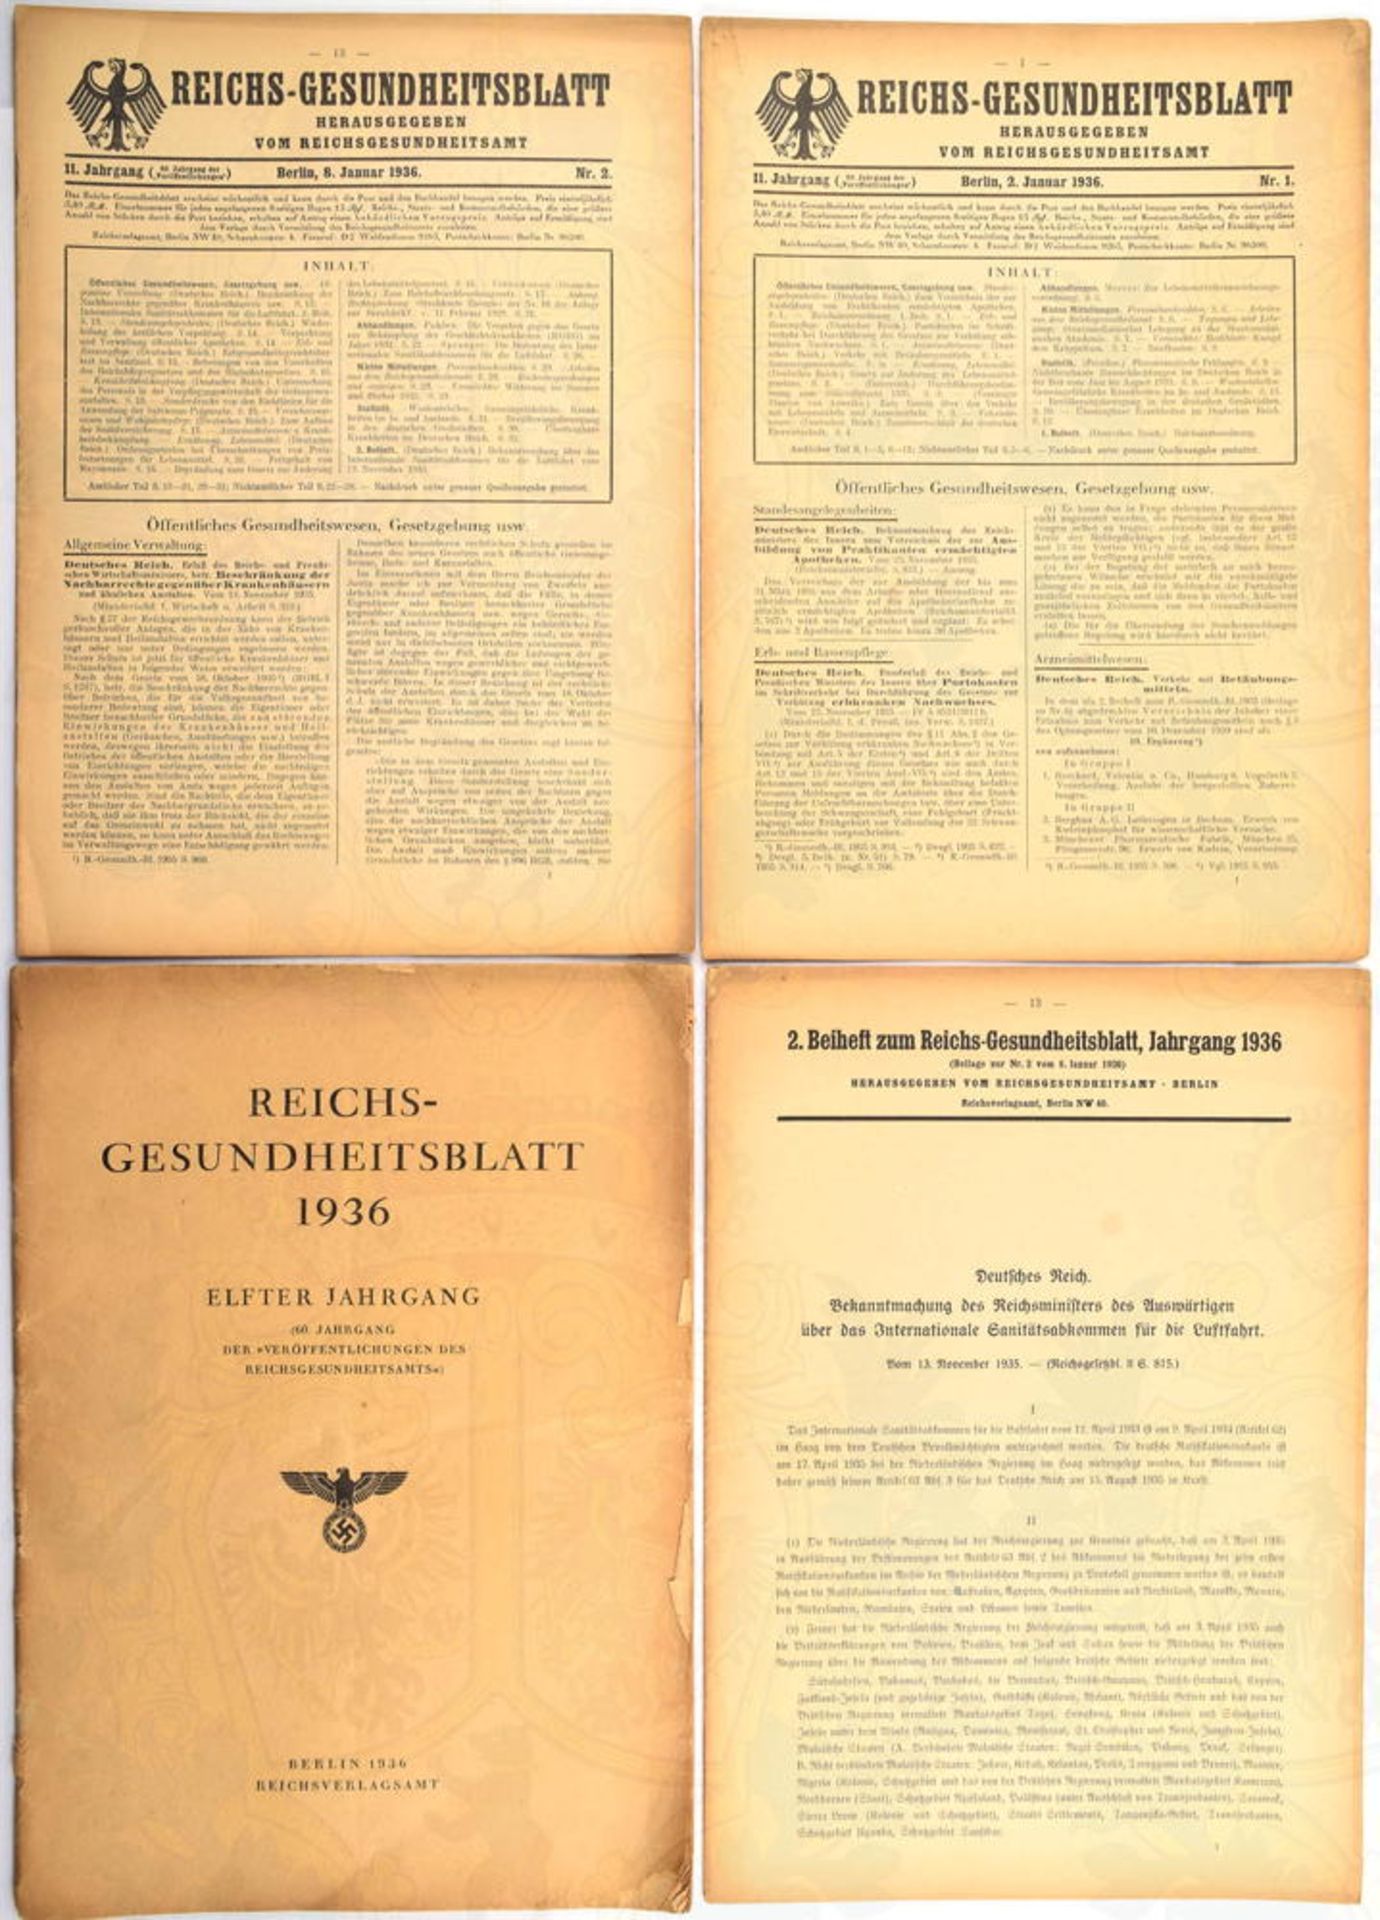 53 REICHS-GESUNDHEITSBLÄTTER 1936